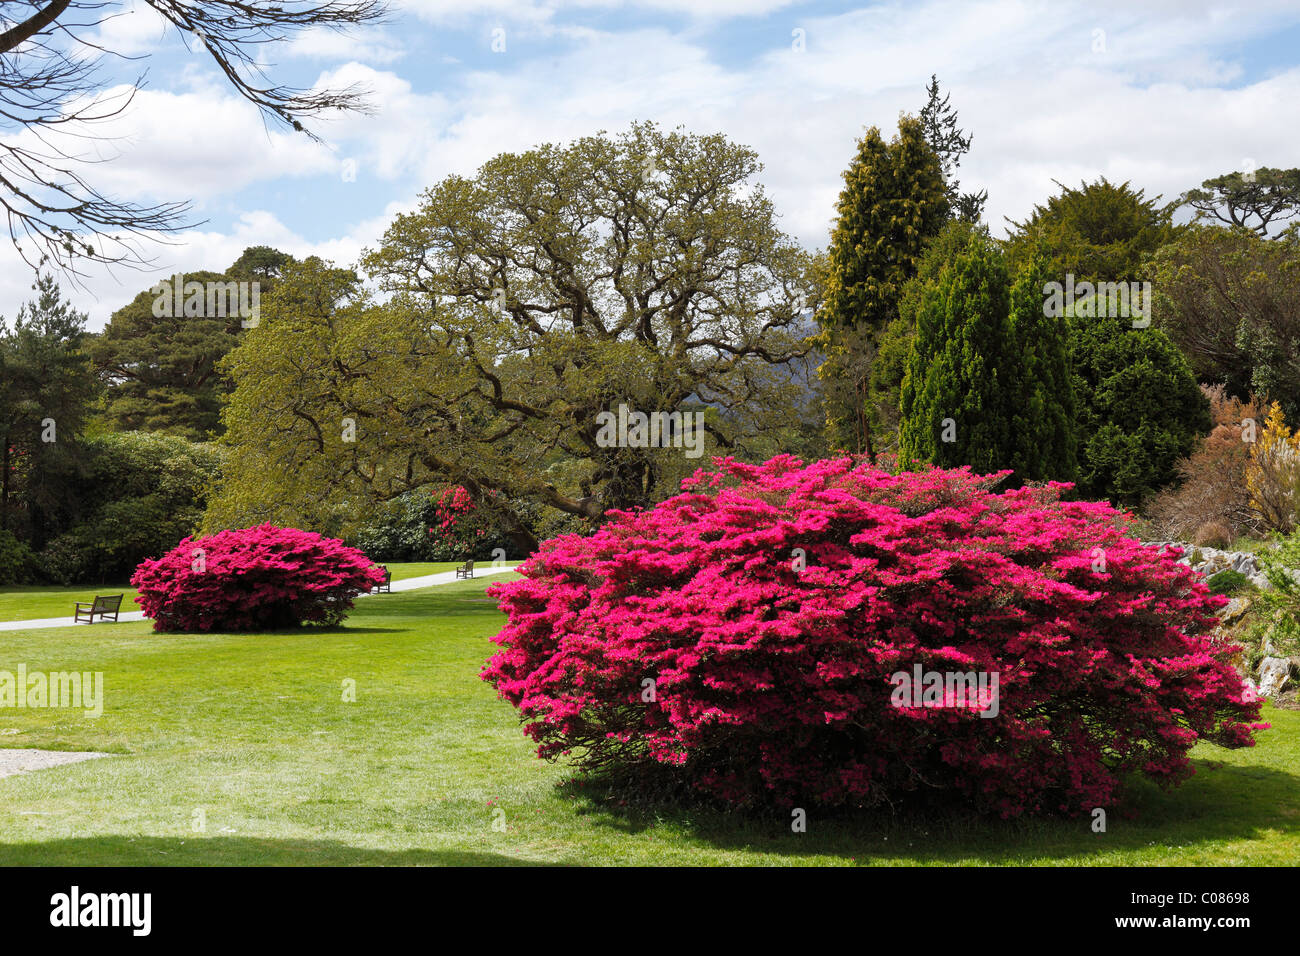 Muckross giardini in primavera, fioritura cespugli di rododendro, Parco Nazionale di Killarney, nella contea di Kerry, Irlanda Isole britanniche Foto Stock